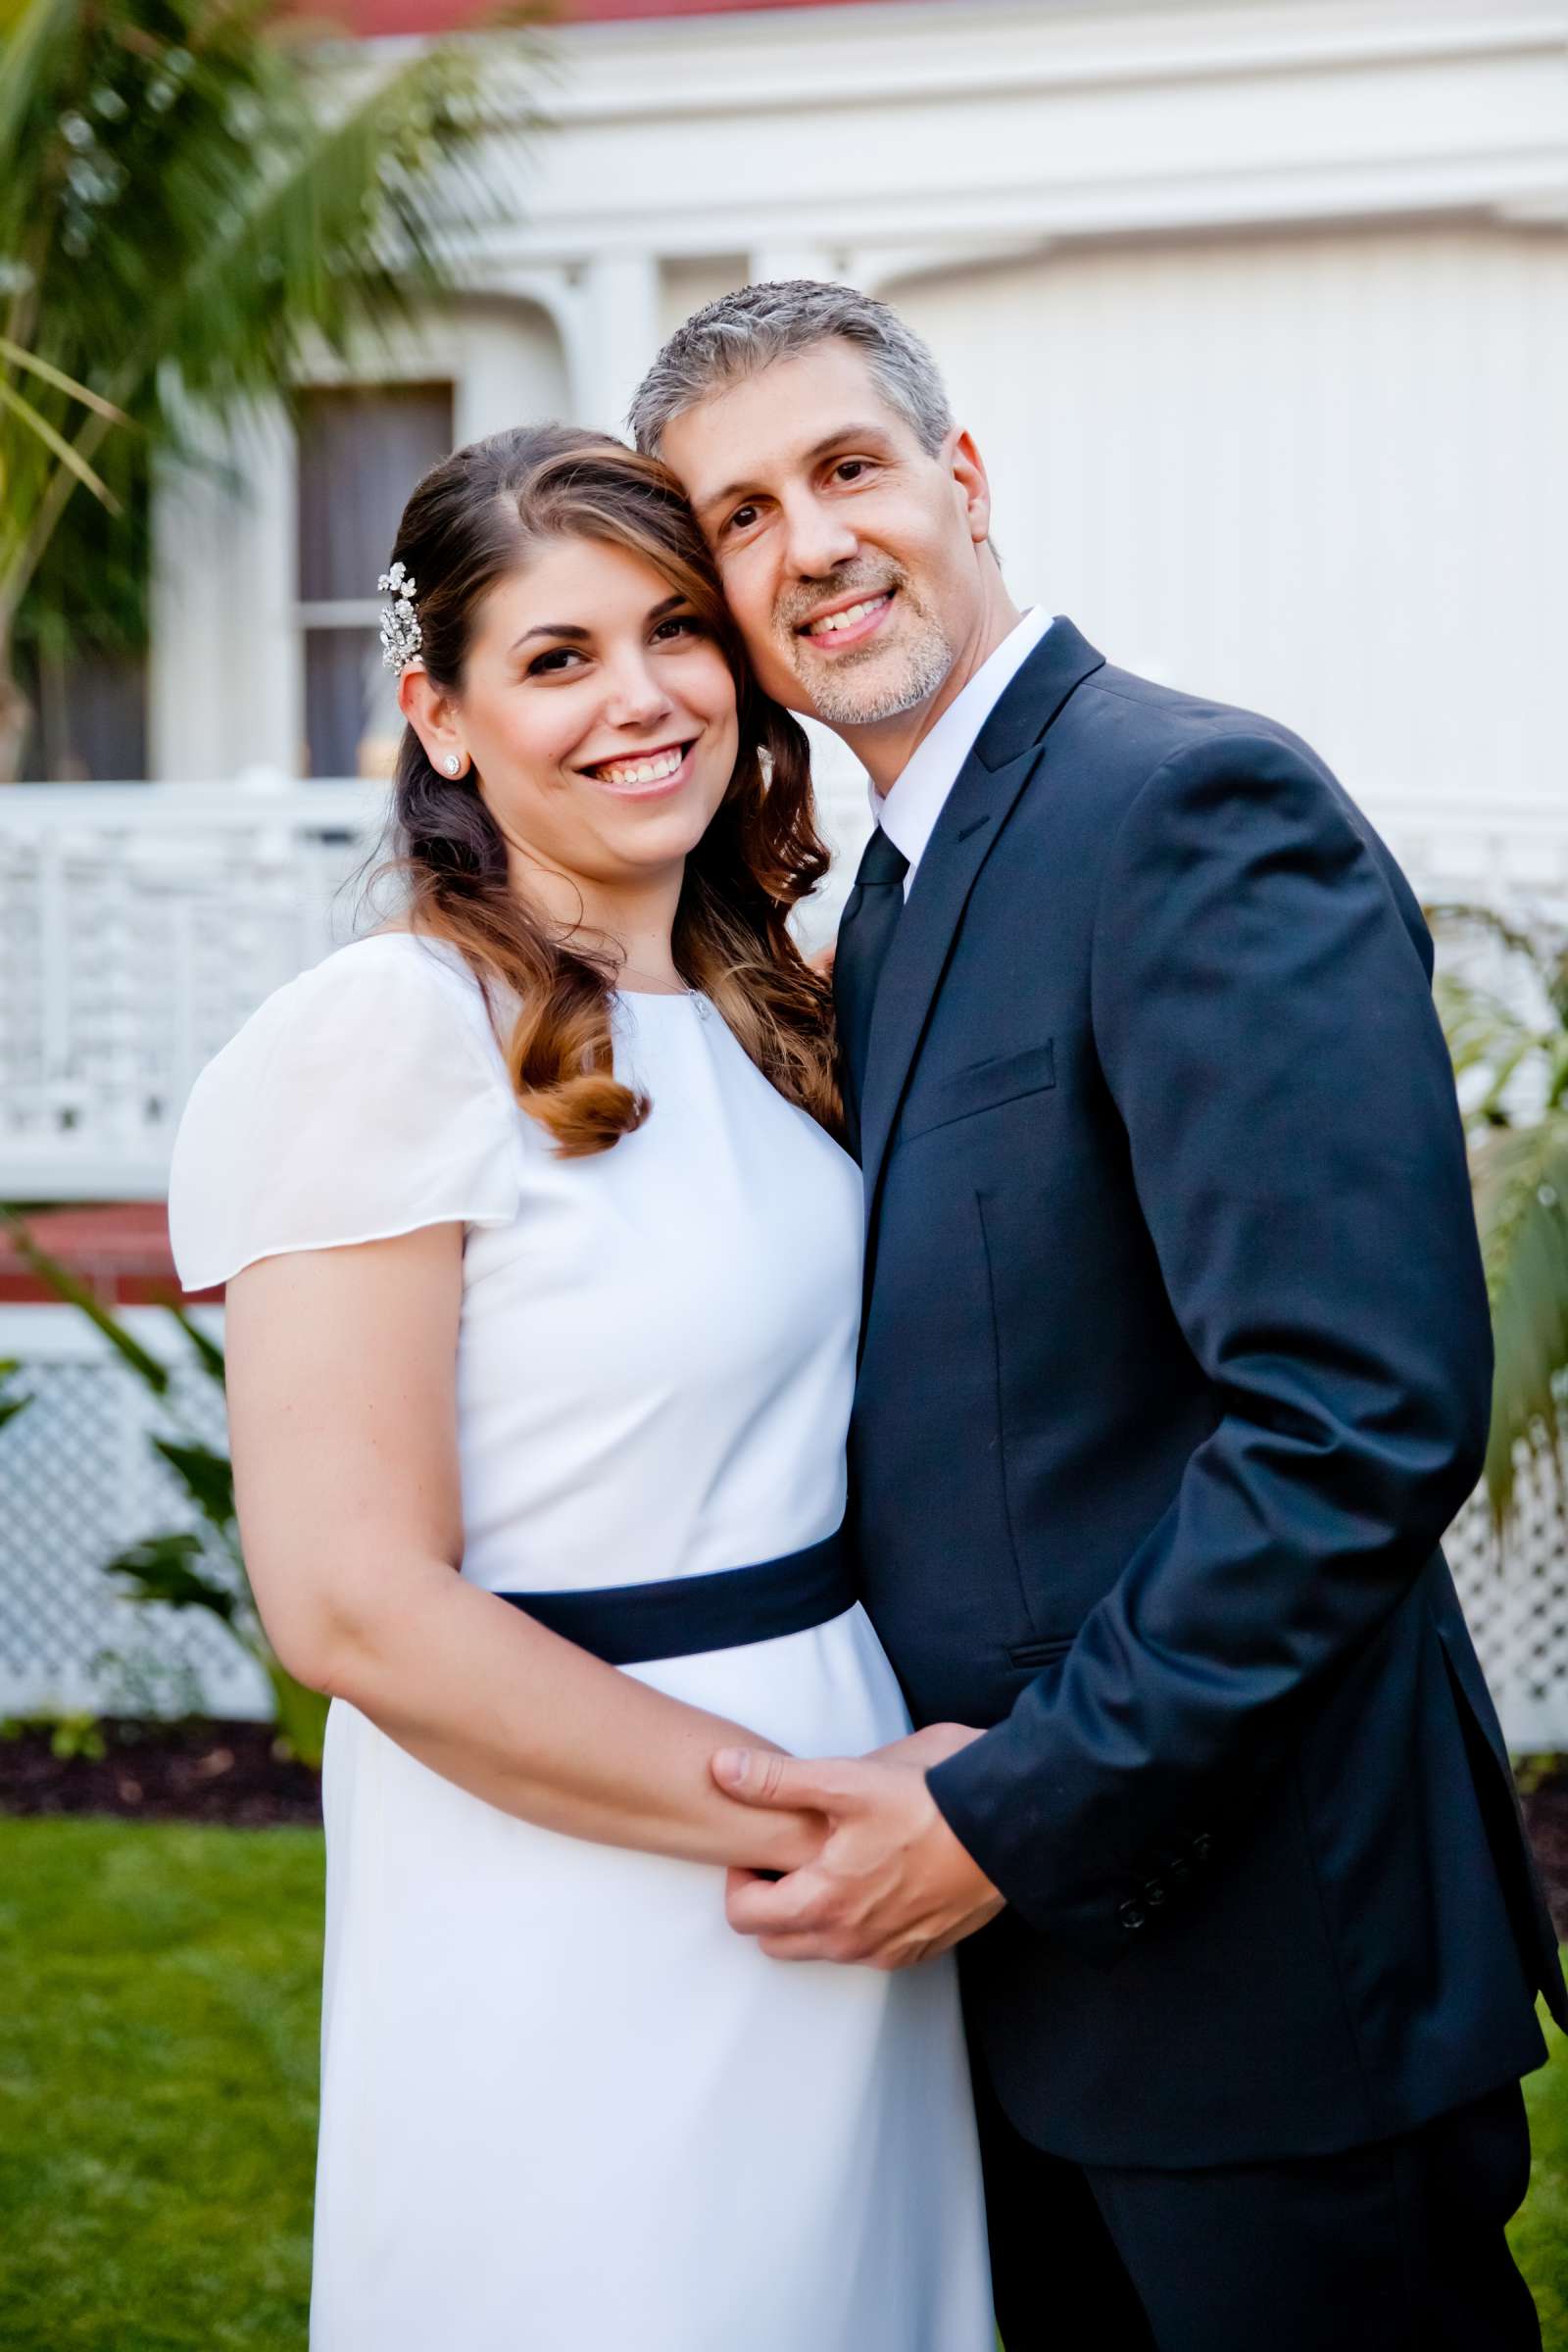 Hotel Del Coronado Wedding, Melis and Marc Wedding Photo #12 by True Photography